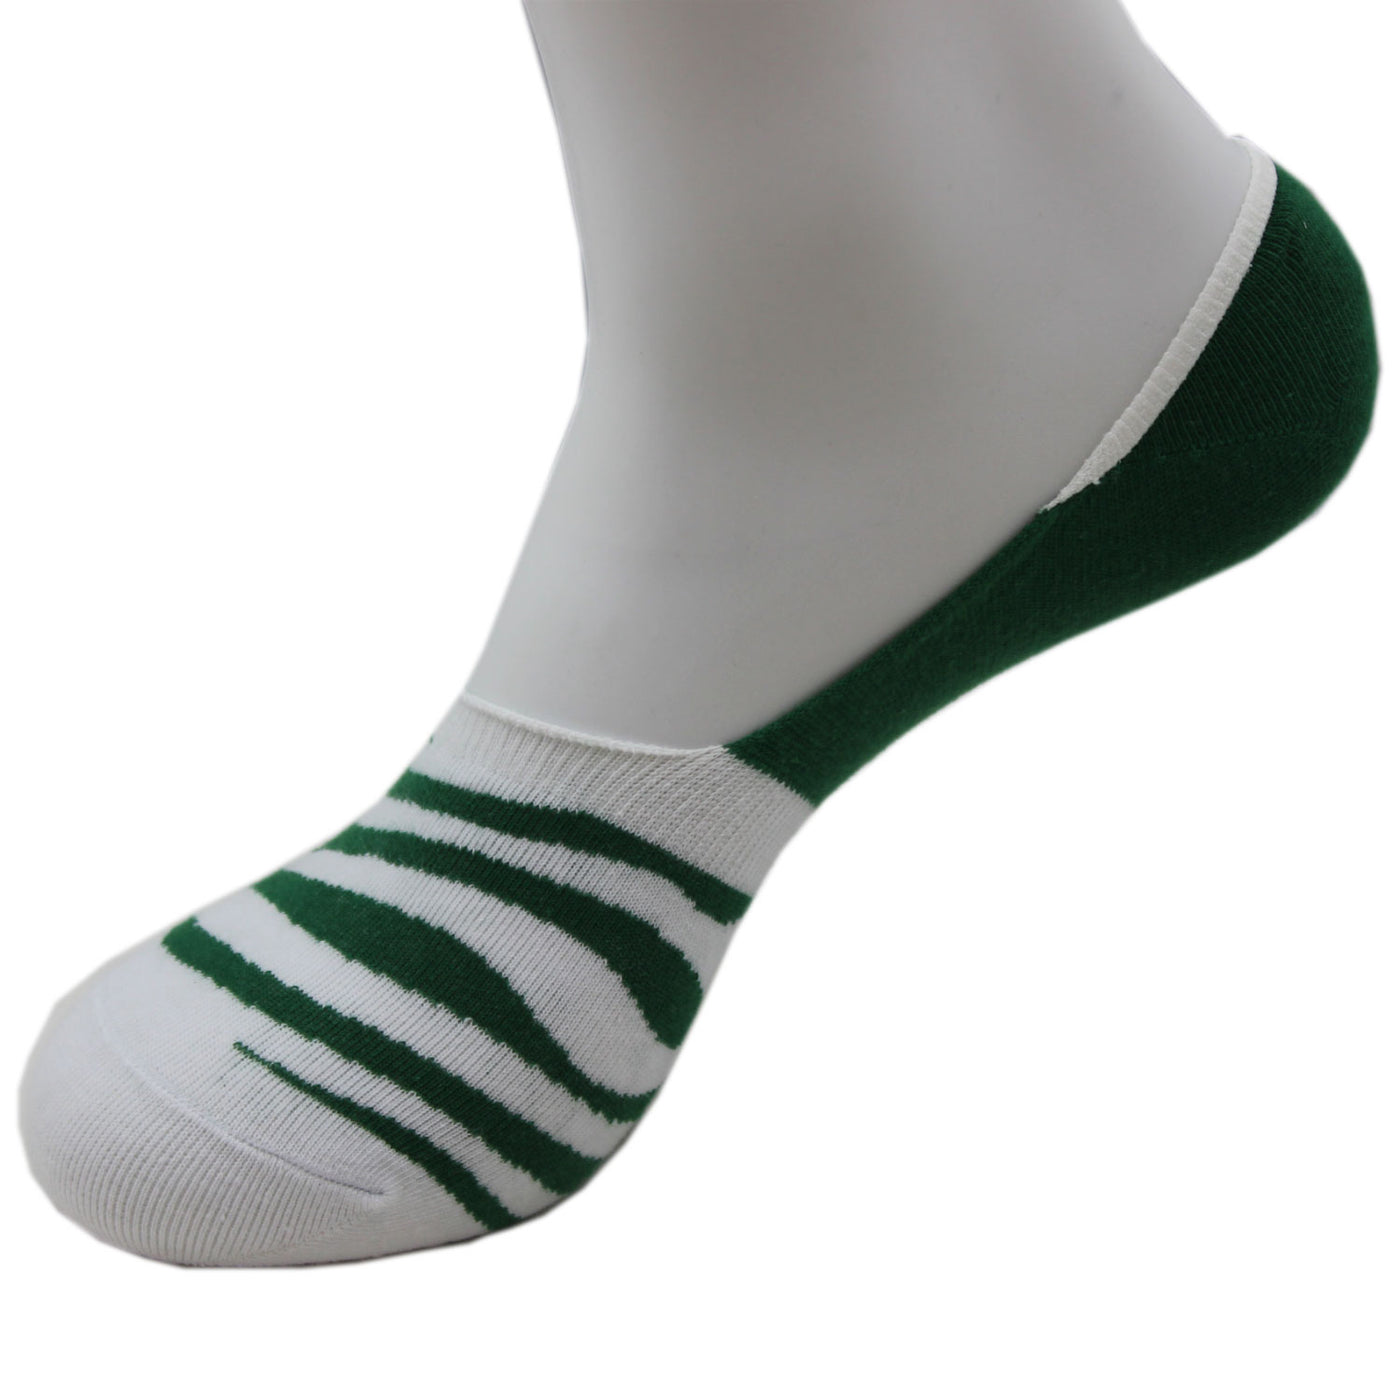 2 paires de chaussettes invisibles en coton peigné fin à rayures - vert